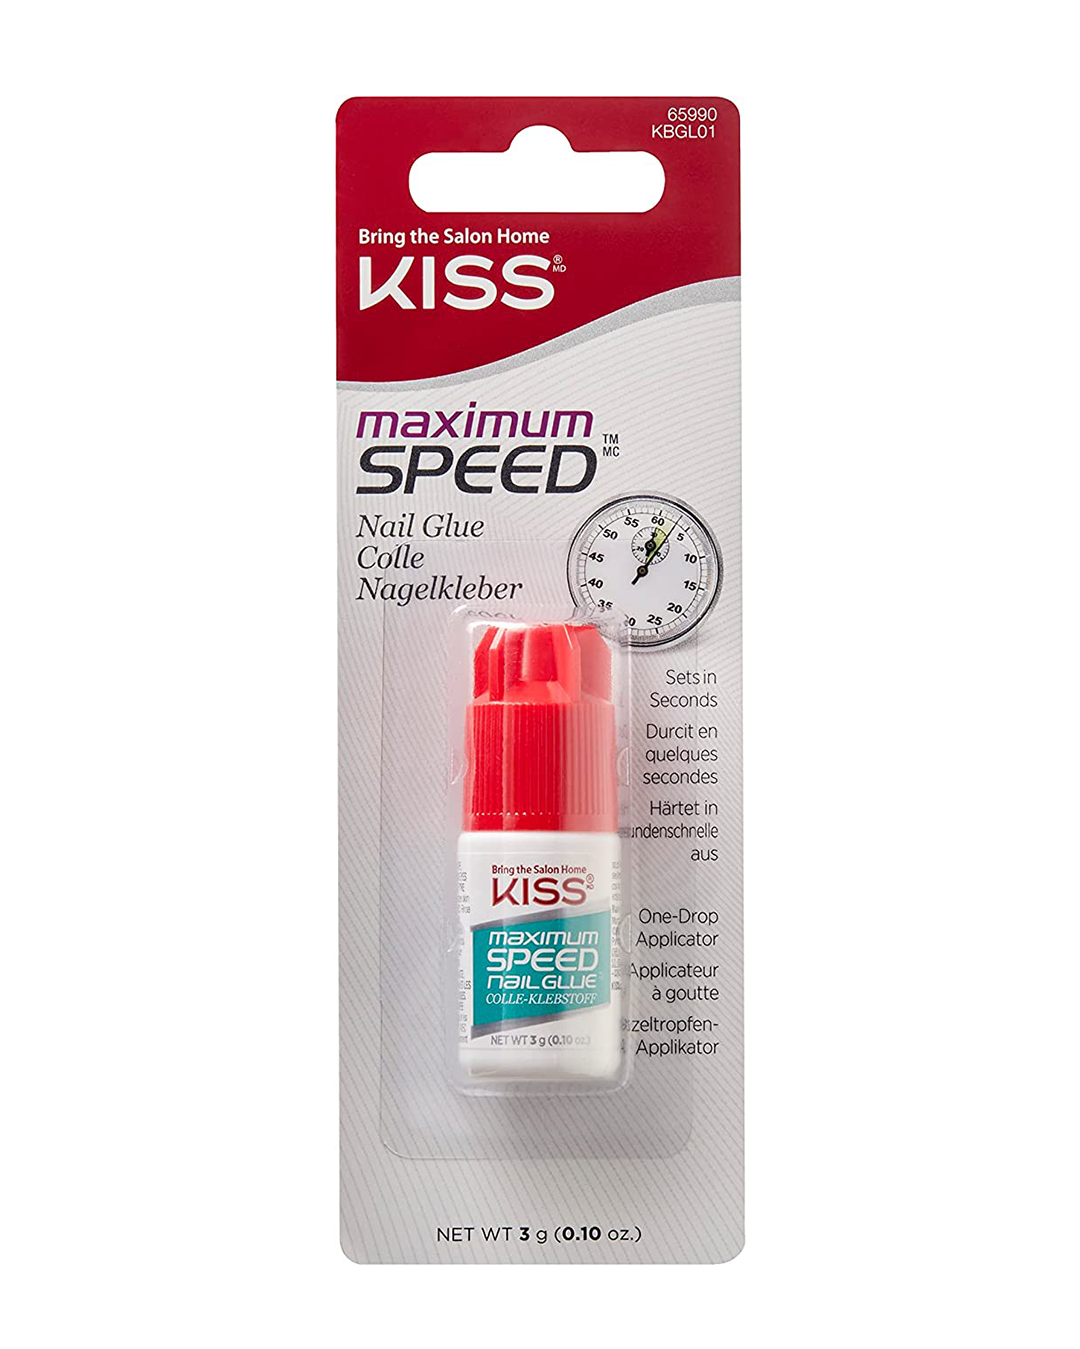 Kiss Maximum Speed Nail Glue (KBGL01)